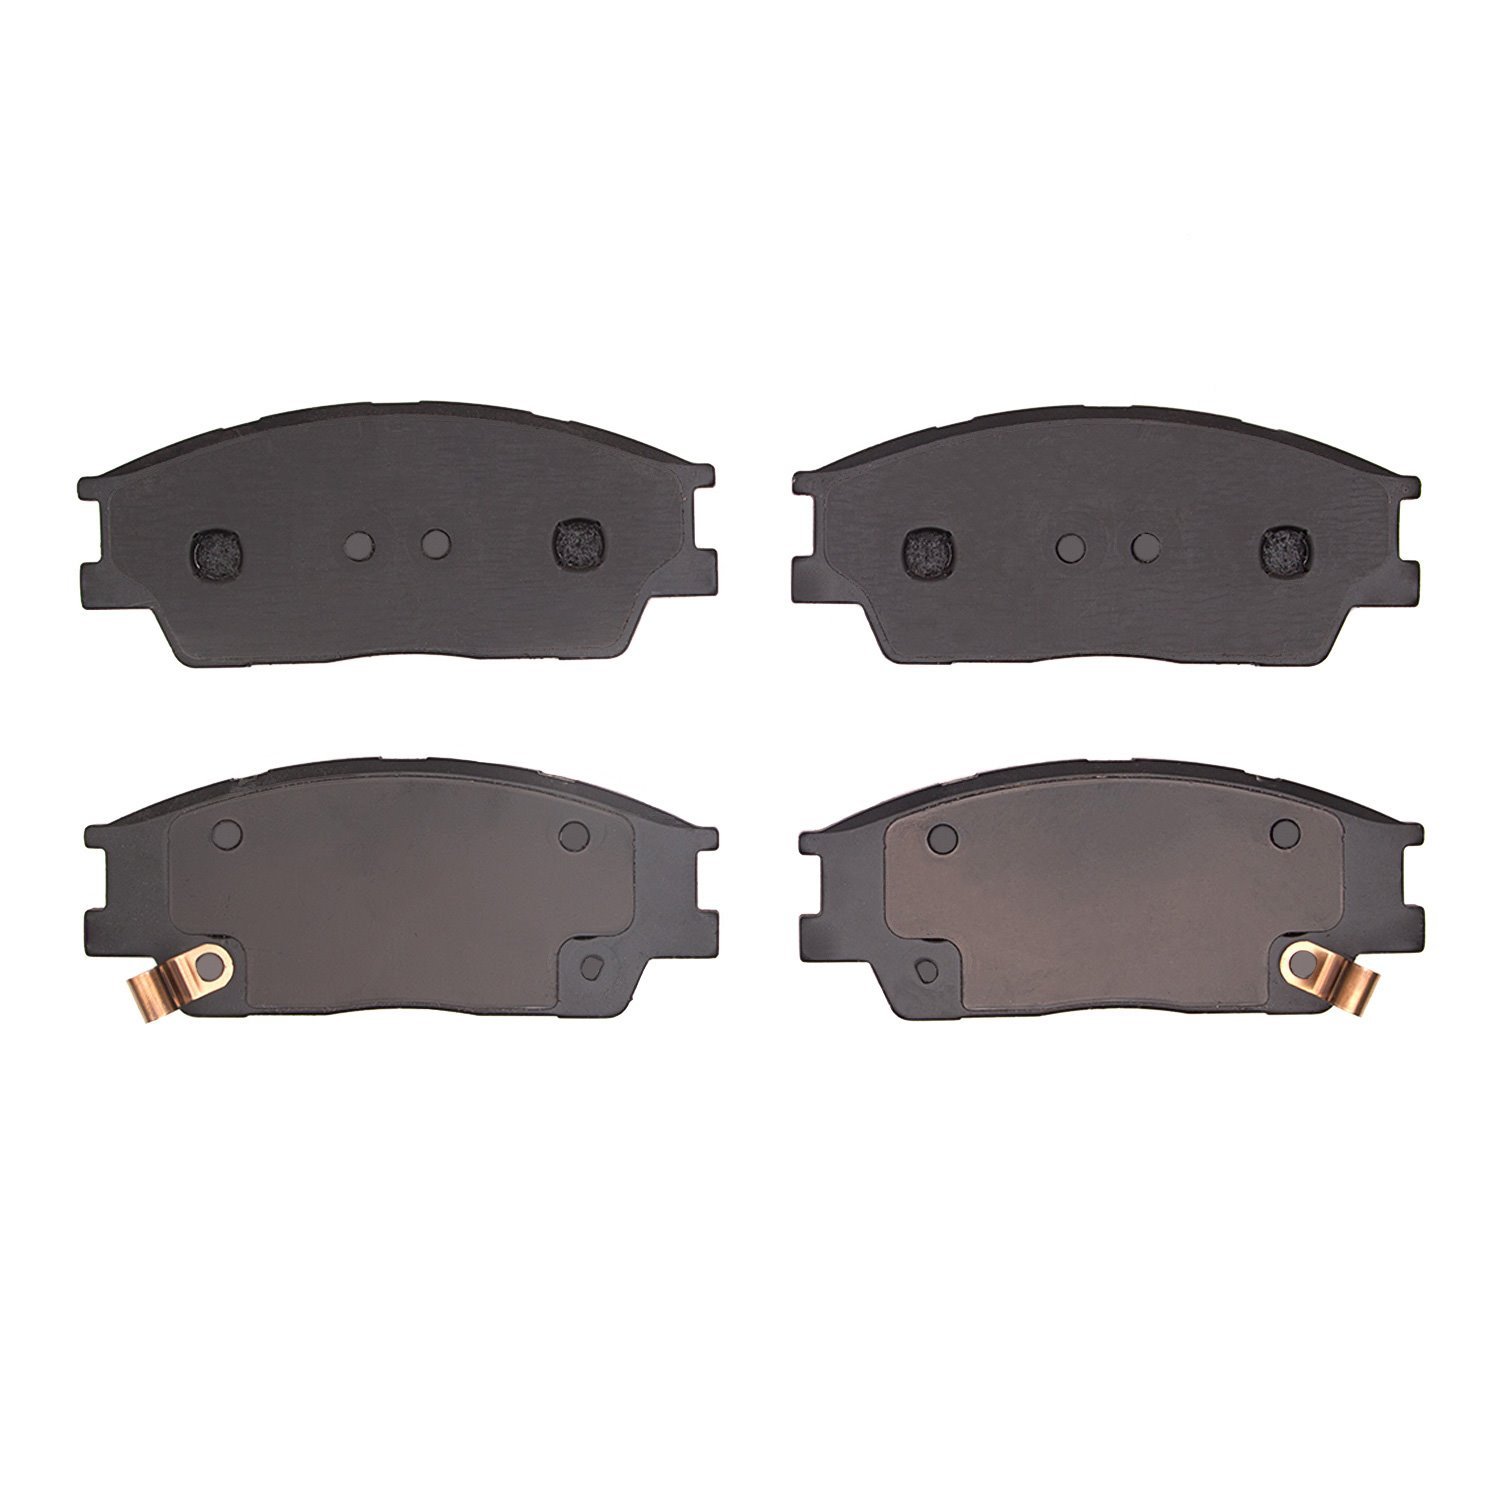 1310-2285-00 3000-Series Ceramic Brake Pads, Fits Select Kia/Hyundai/Genesis, Position: Front